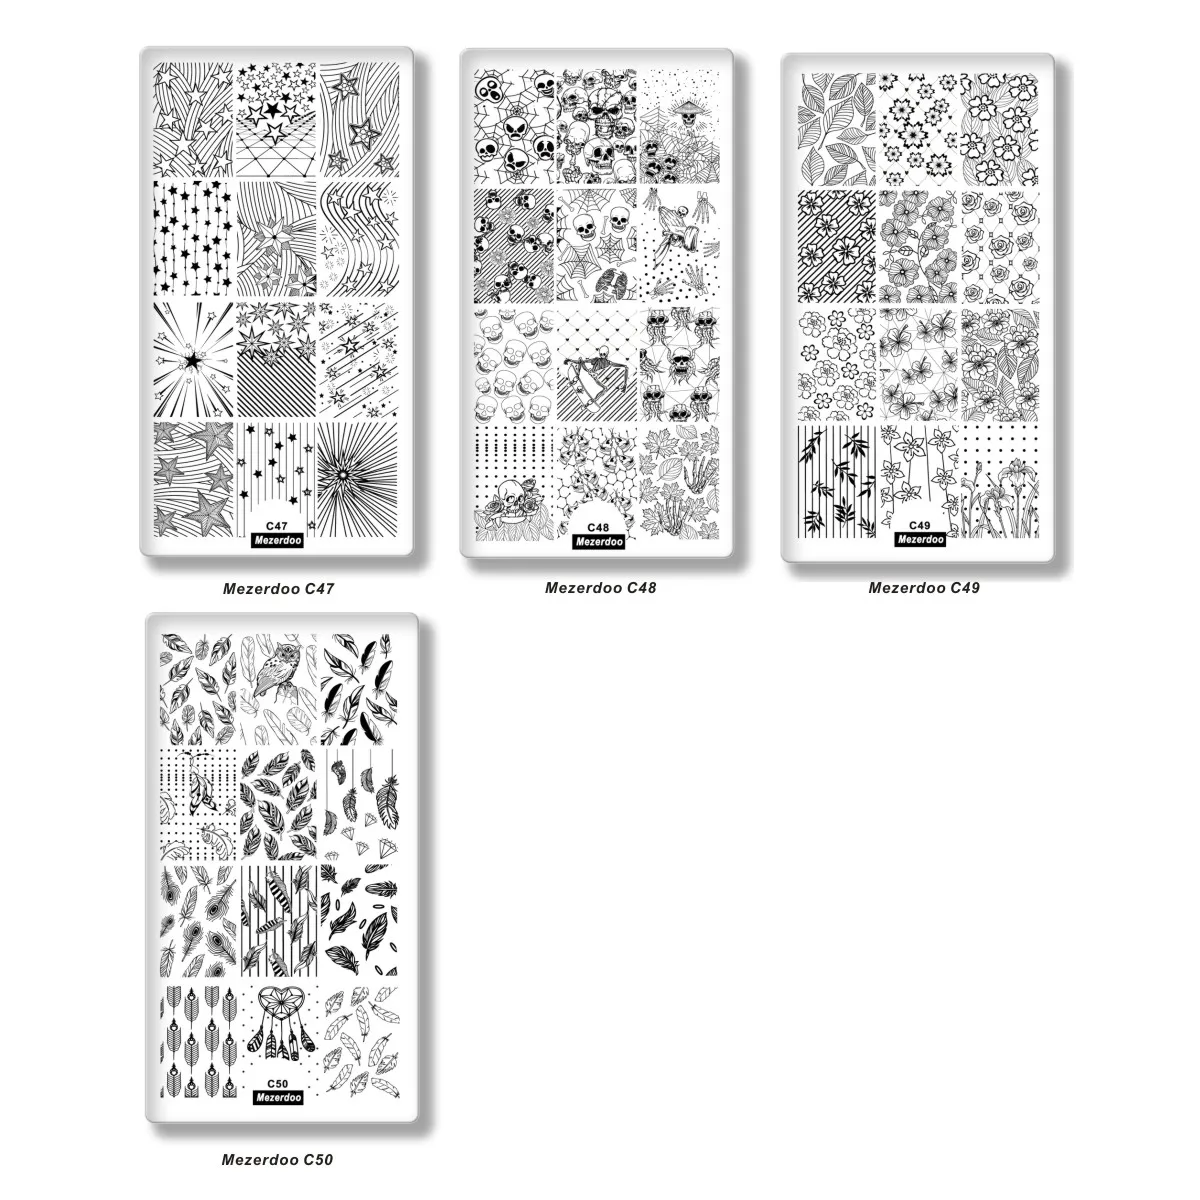 Mezerdoo 1 шт. прямоугольная штамповка для ногтей изображение пластины Алмазный цветок перо Дизайн DIY штамп шаблон для ногтей трафарет набор инструментов